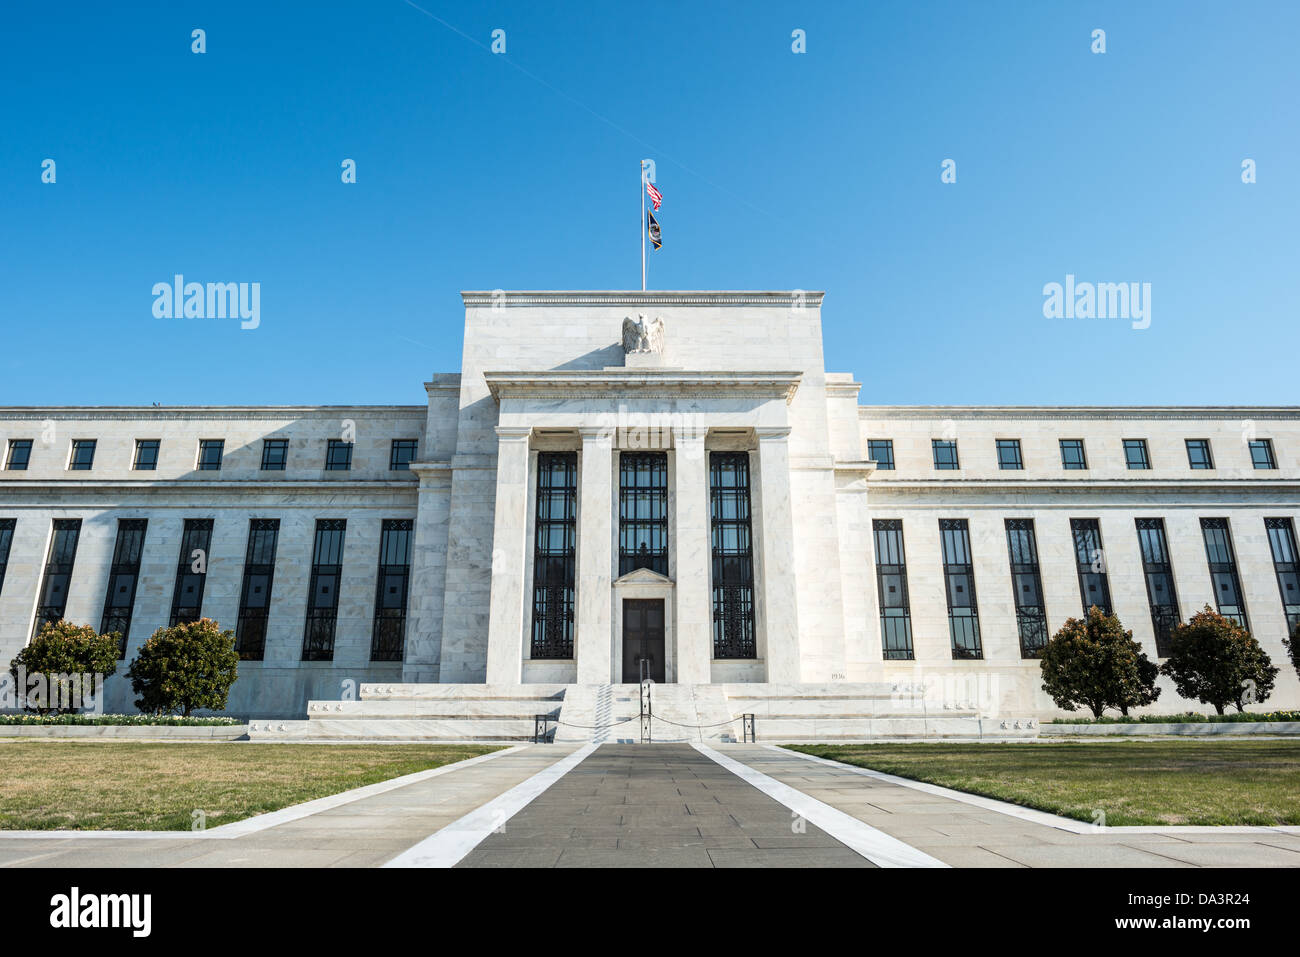 WASHINGTON, DC - die nationale Zentrale des US Federal Reserve System, die im Eccles Building in der Constitution Avenue in Washington DC untergebracht ist. Es beherbergt die Hauptgeschäftsstellen des Gouverneursrates der Federal Reserve. Die Federal Reserve oder die Fed, wie sie oft bekannt ist, ist das Zentralbankensystem der Vereinigten Staaten. Der mit dem Federal Reserve Act von 1913 festgelegte Leitsatz der US-Geldpolitik ist die Maximierung der Beschäftigung, die Stabilisierung der Preise und die Abschwächung der langfristigen Zinssätze. Benannt ist das Gebäude nach Marriner S. Eccles (1890-1977), Vorsitzender der föderalen R. Stockfoto